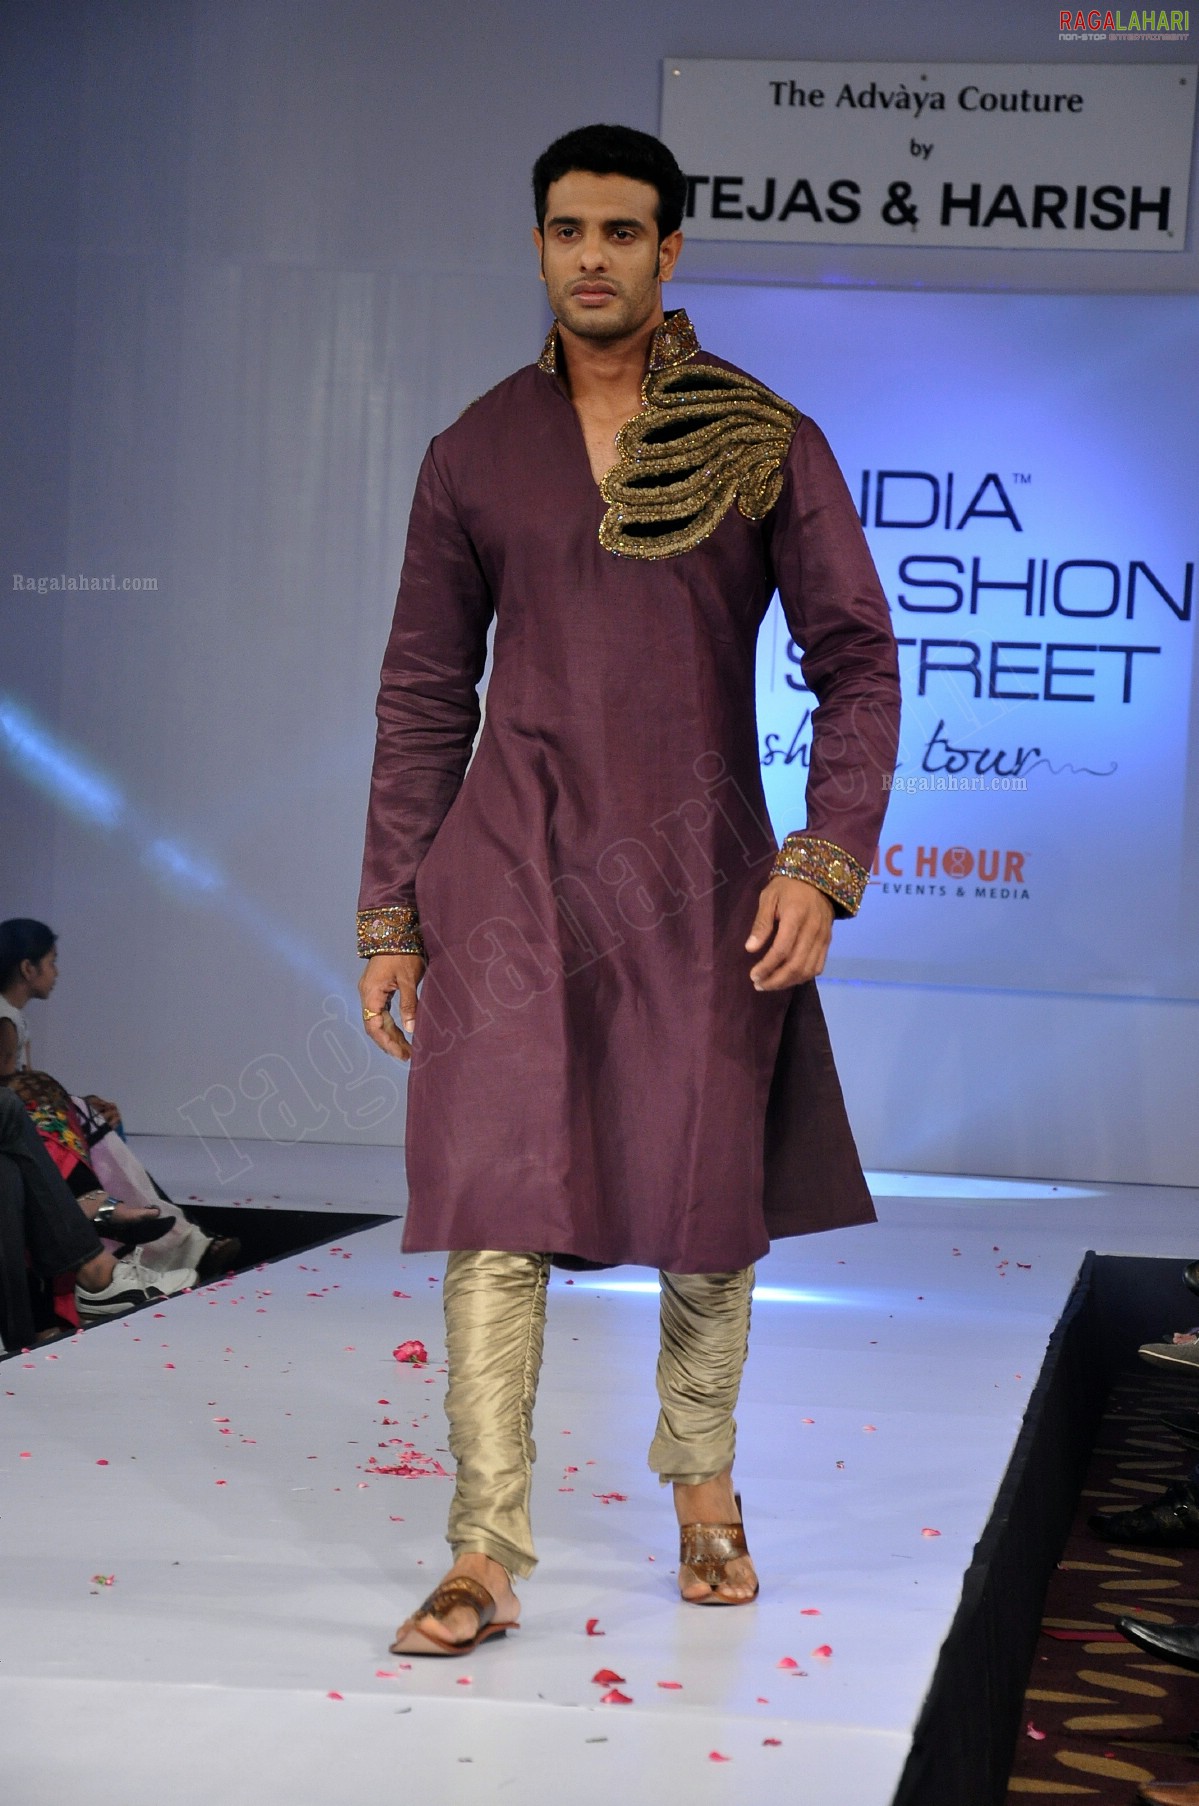 India Fashion Street - Fashion Tour 2012 (Day 2)